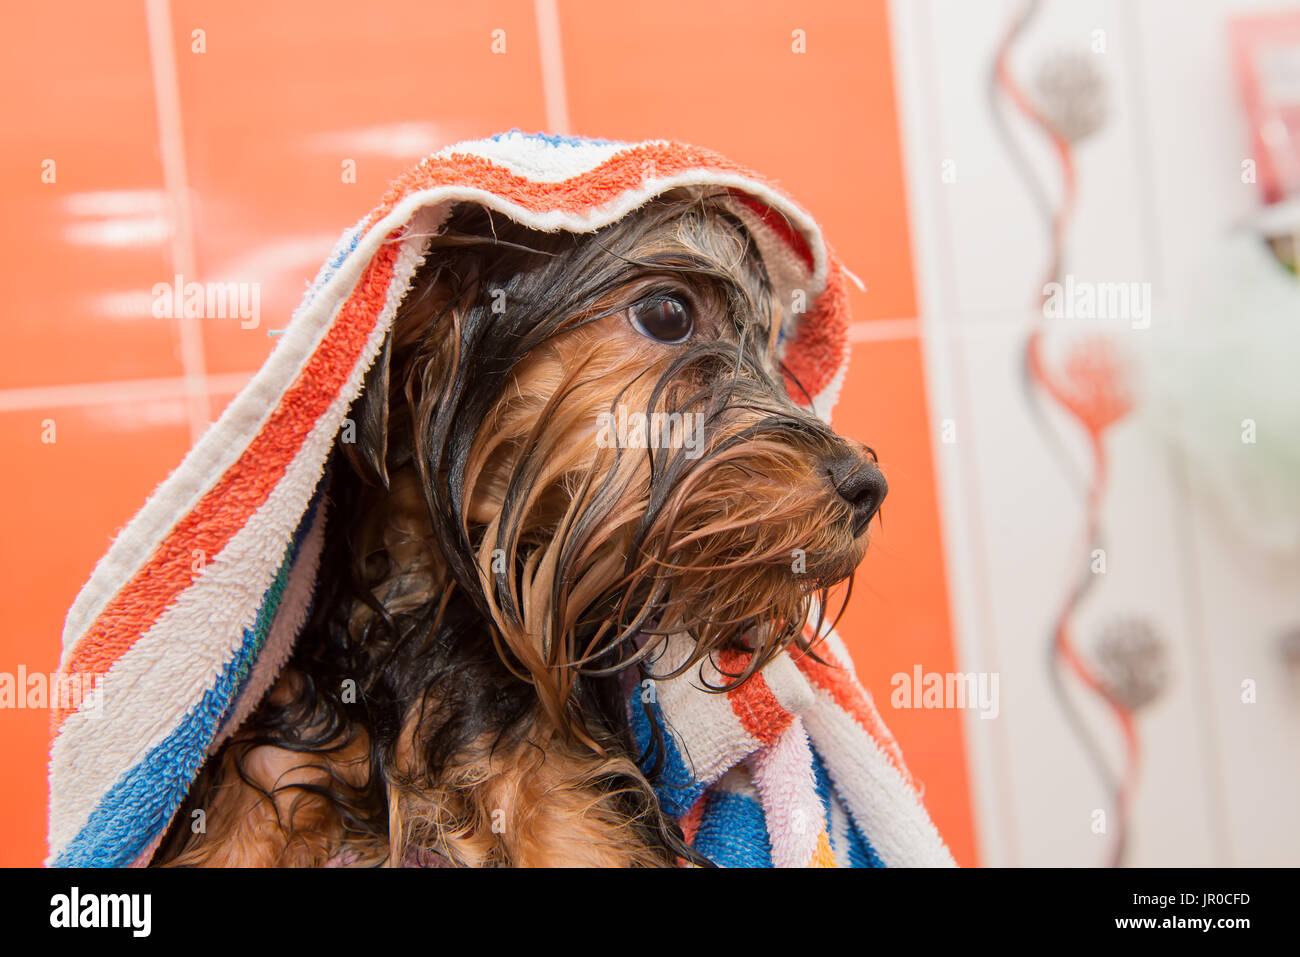 Yorkshire Terrier Welpen in ein Handtuch nach dem Waschen nass  Stockfotografie - Alamy